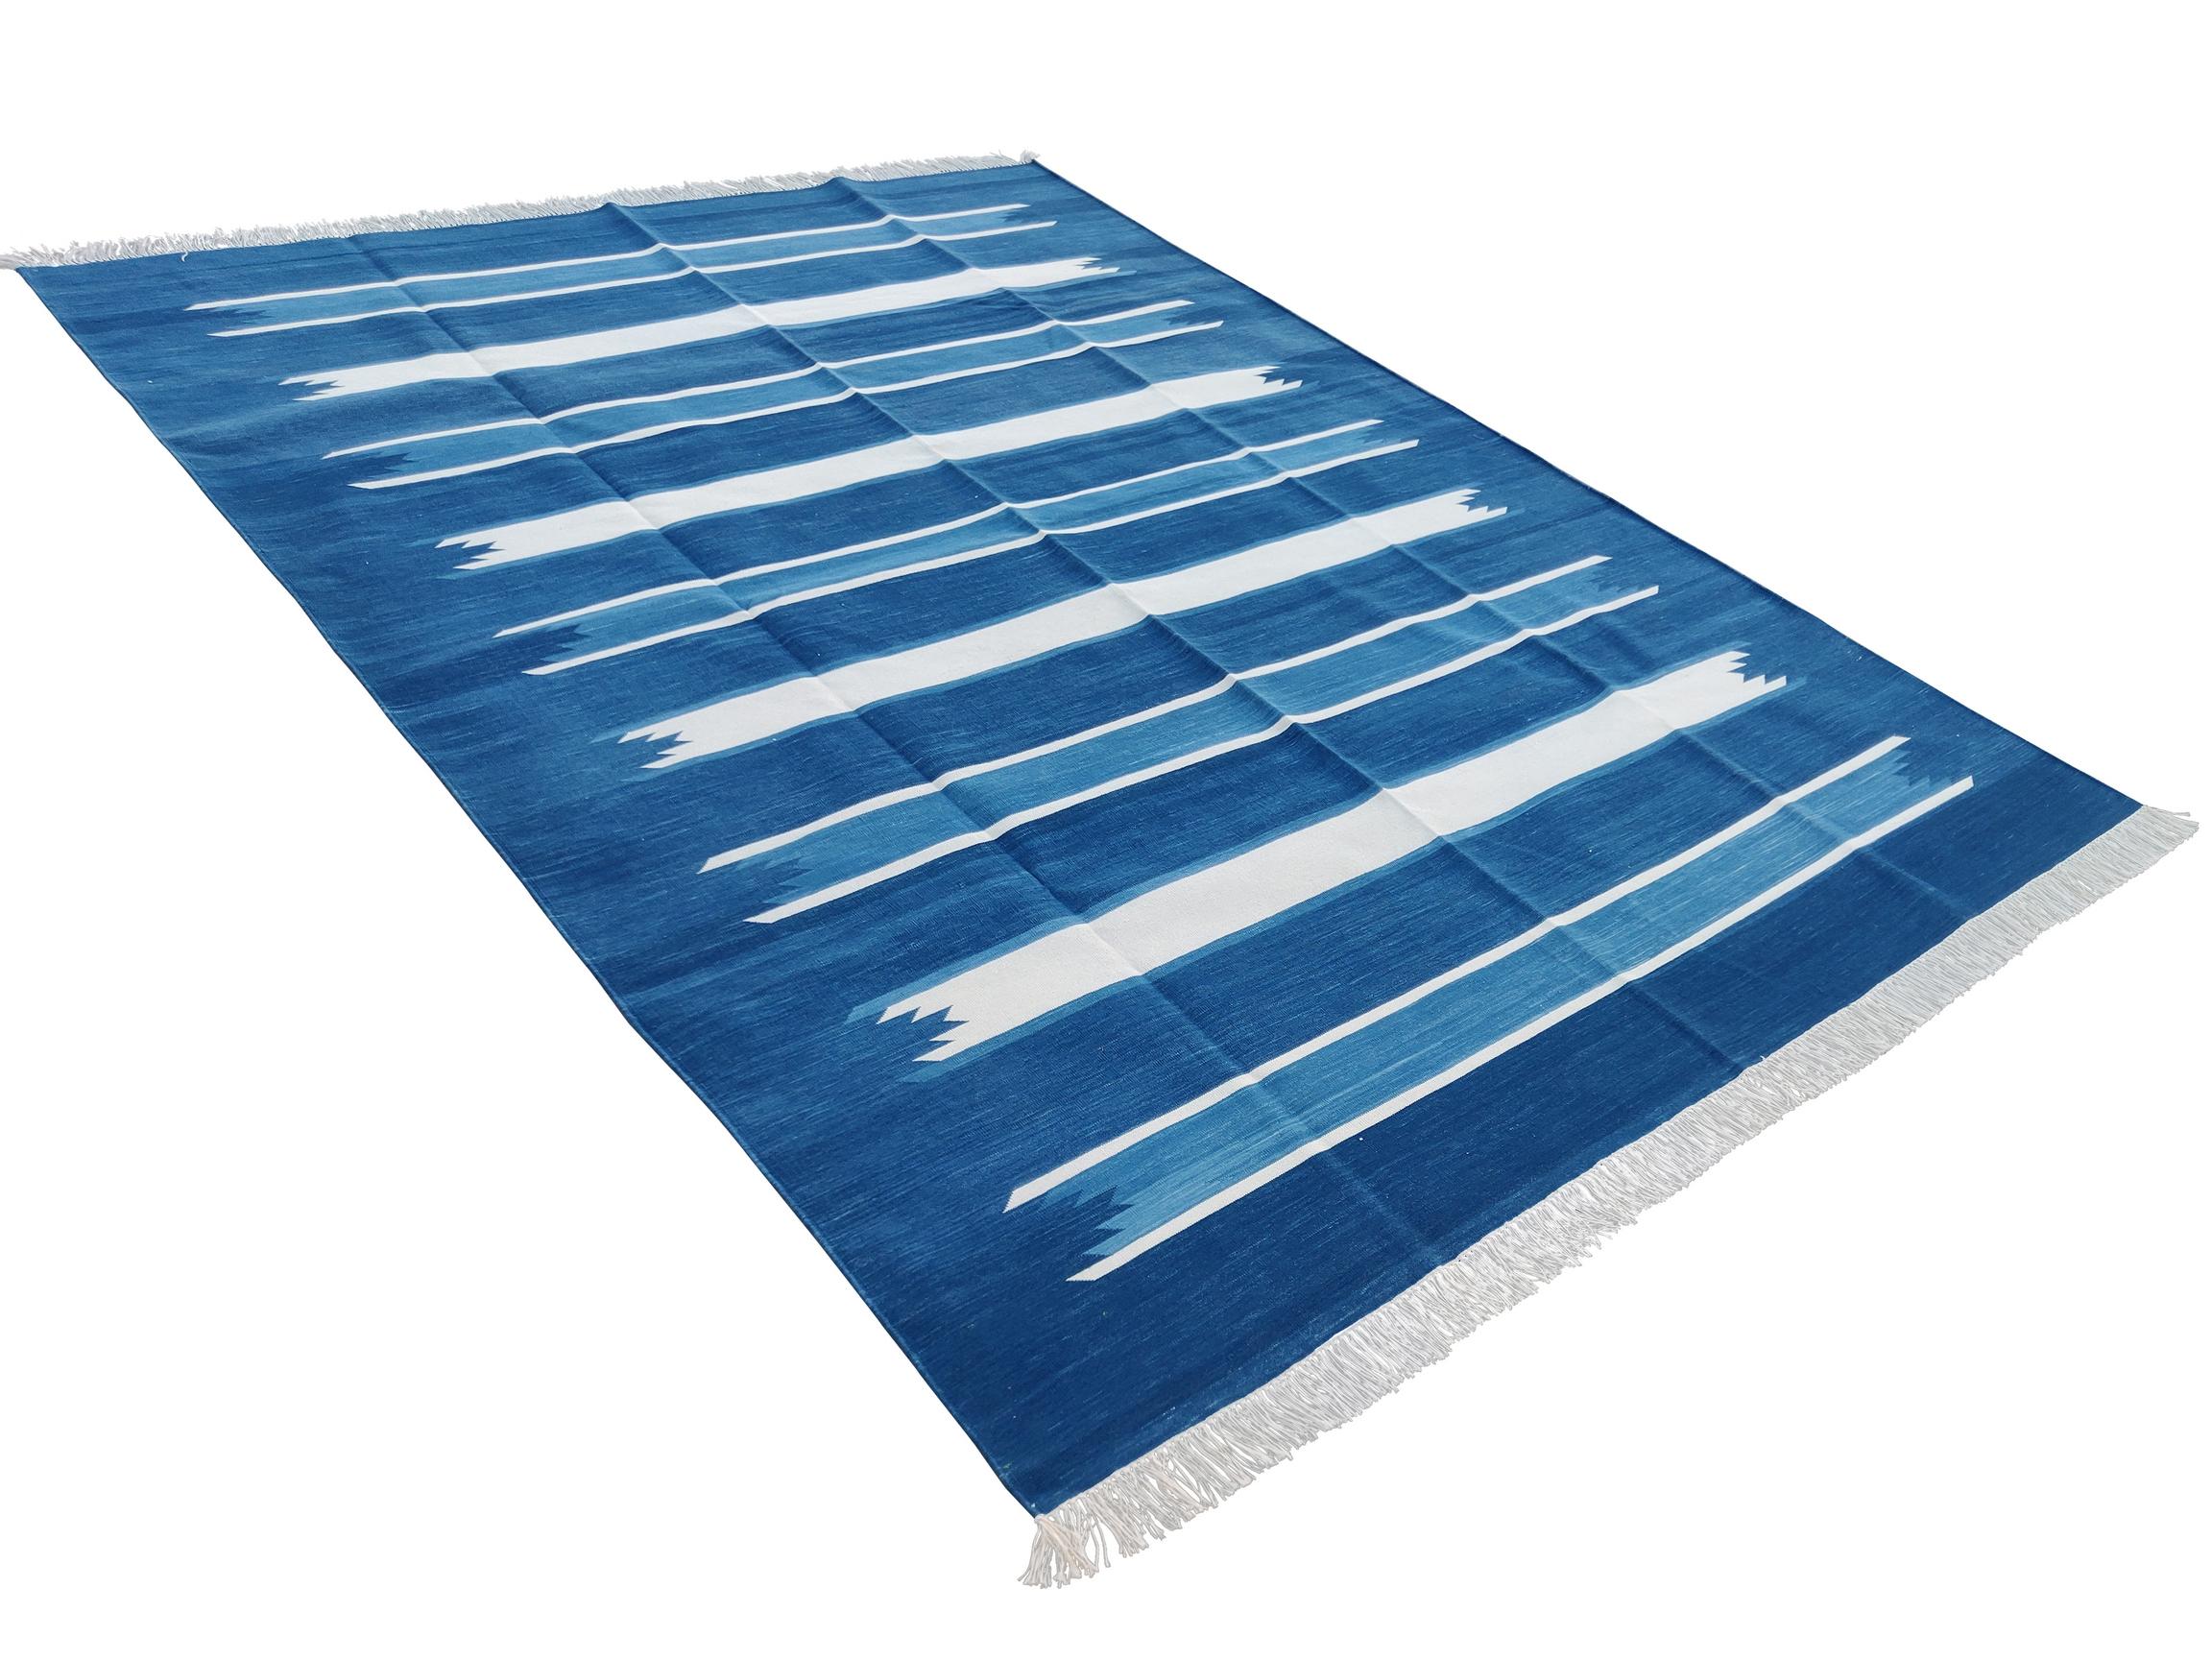 Baumwolle pflanzlich gefärbt blau und weiß gestreift indischen Dhurrie Teppich-6'x9' 
Diese speziellen flachgewebten Dhurries werden aus 15-fachem Garn aus 100% Baumwolle handgewebt. Aufgrund der speziellen Fertigungstechniken, die zur Herstellung